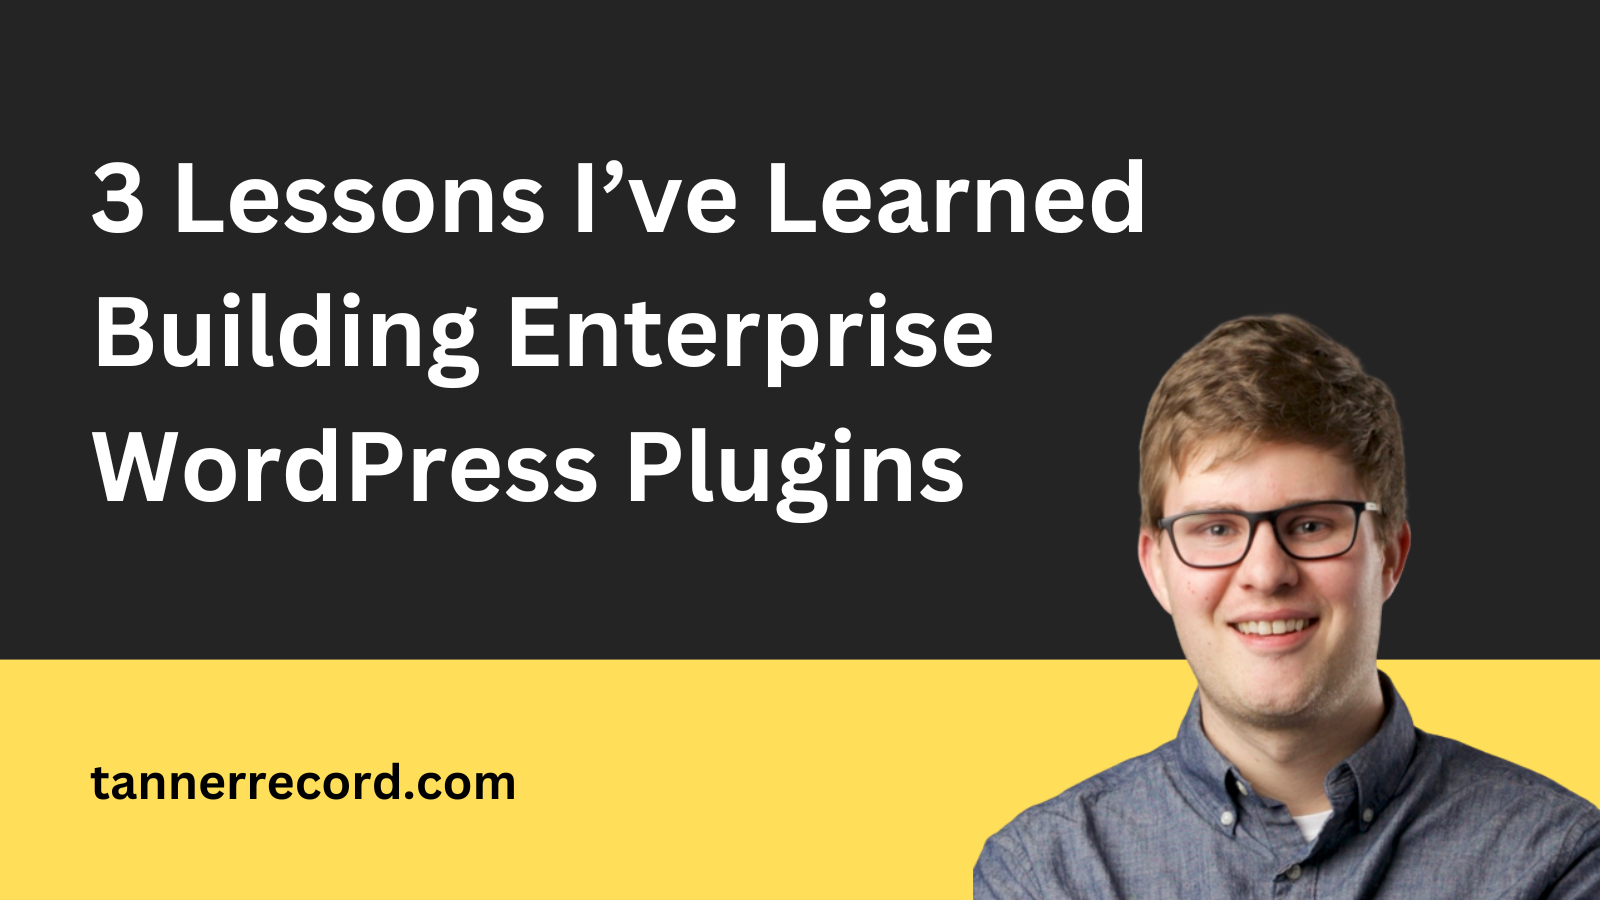 3 Lessons I’ve Learned Building Enterprise WordPress Plugins